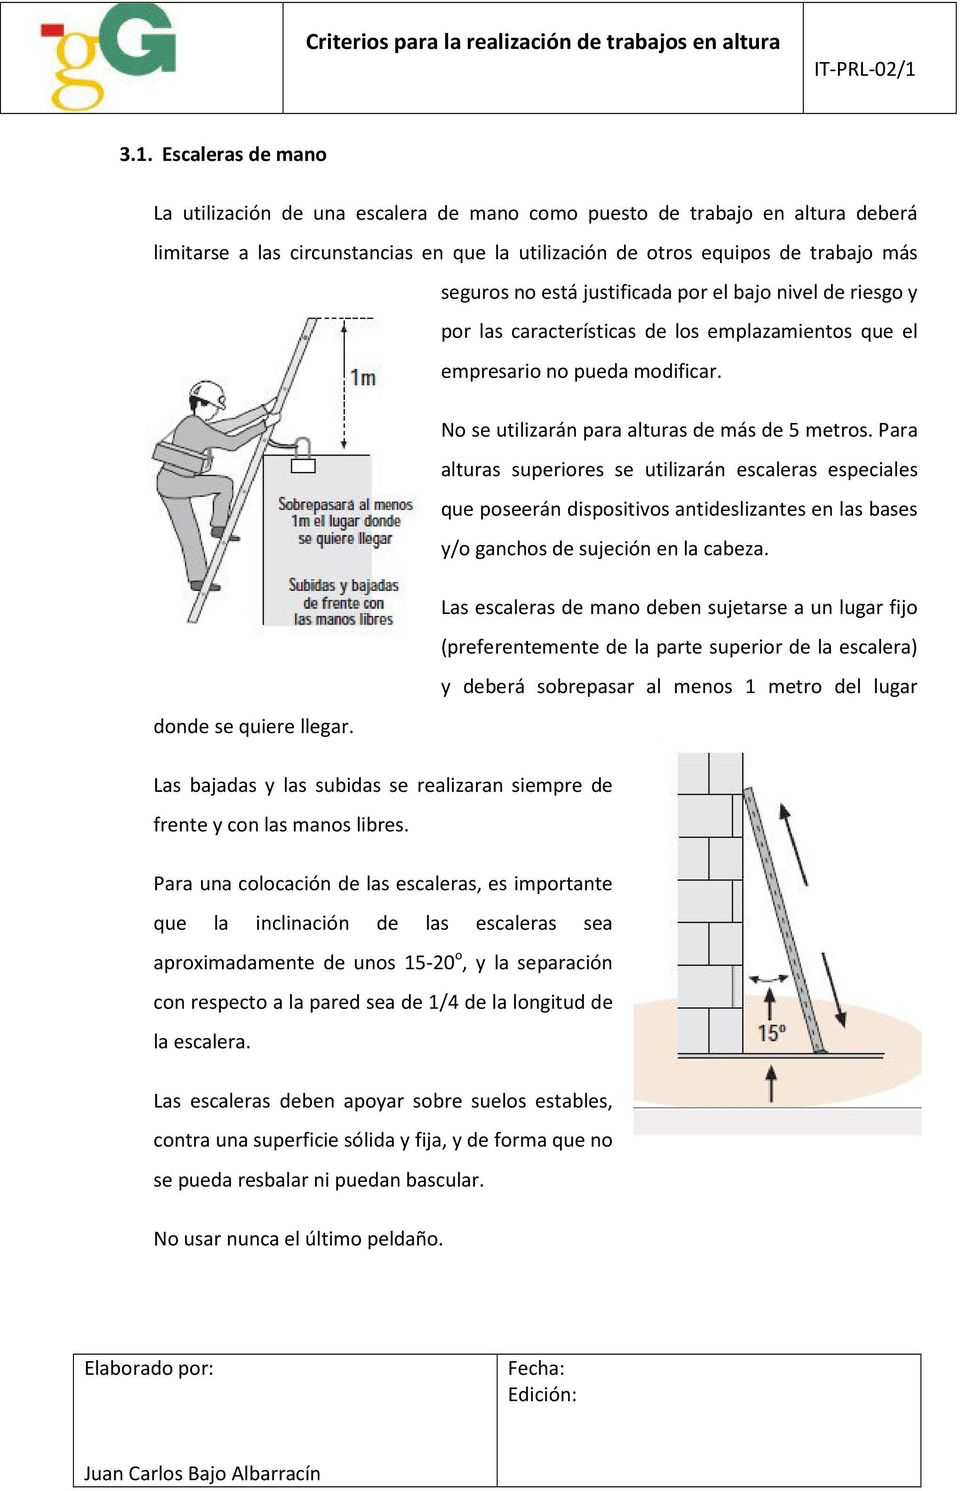 Para alturas superiores se utilizarán escaleras especiales que poseerán dispositivos antideslizantes en las bases y/o ganchos de sujeción en la cabeza.